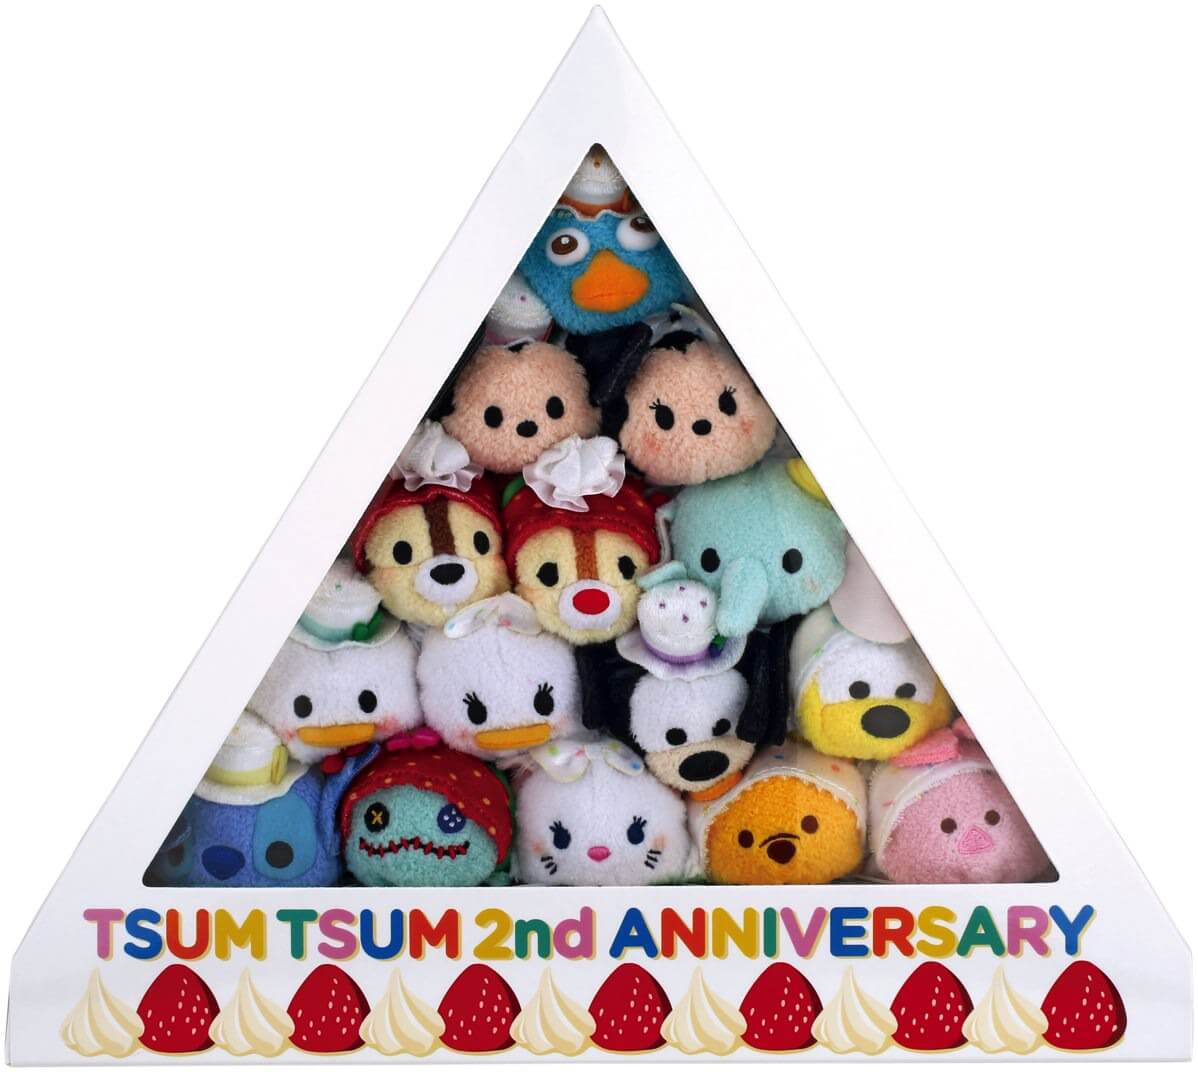 発売2周年アニバーサリーケーキBOX TSUM TSUM&アルタ限定ツムツム